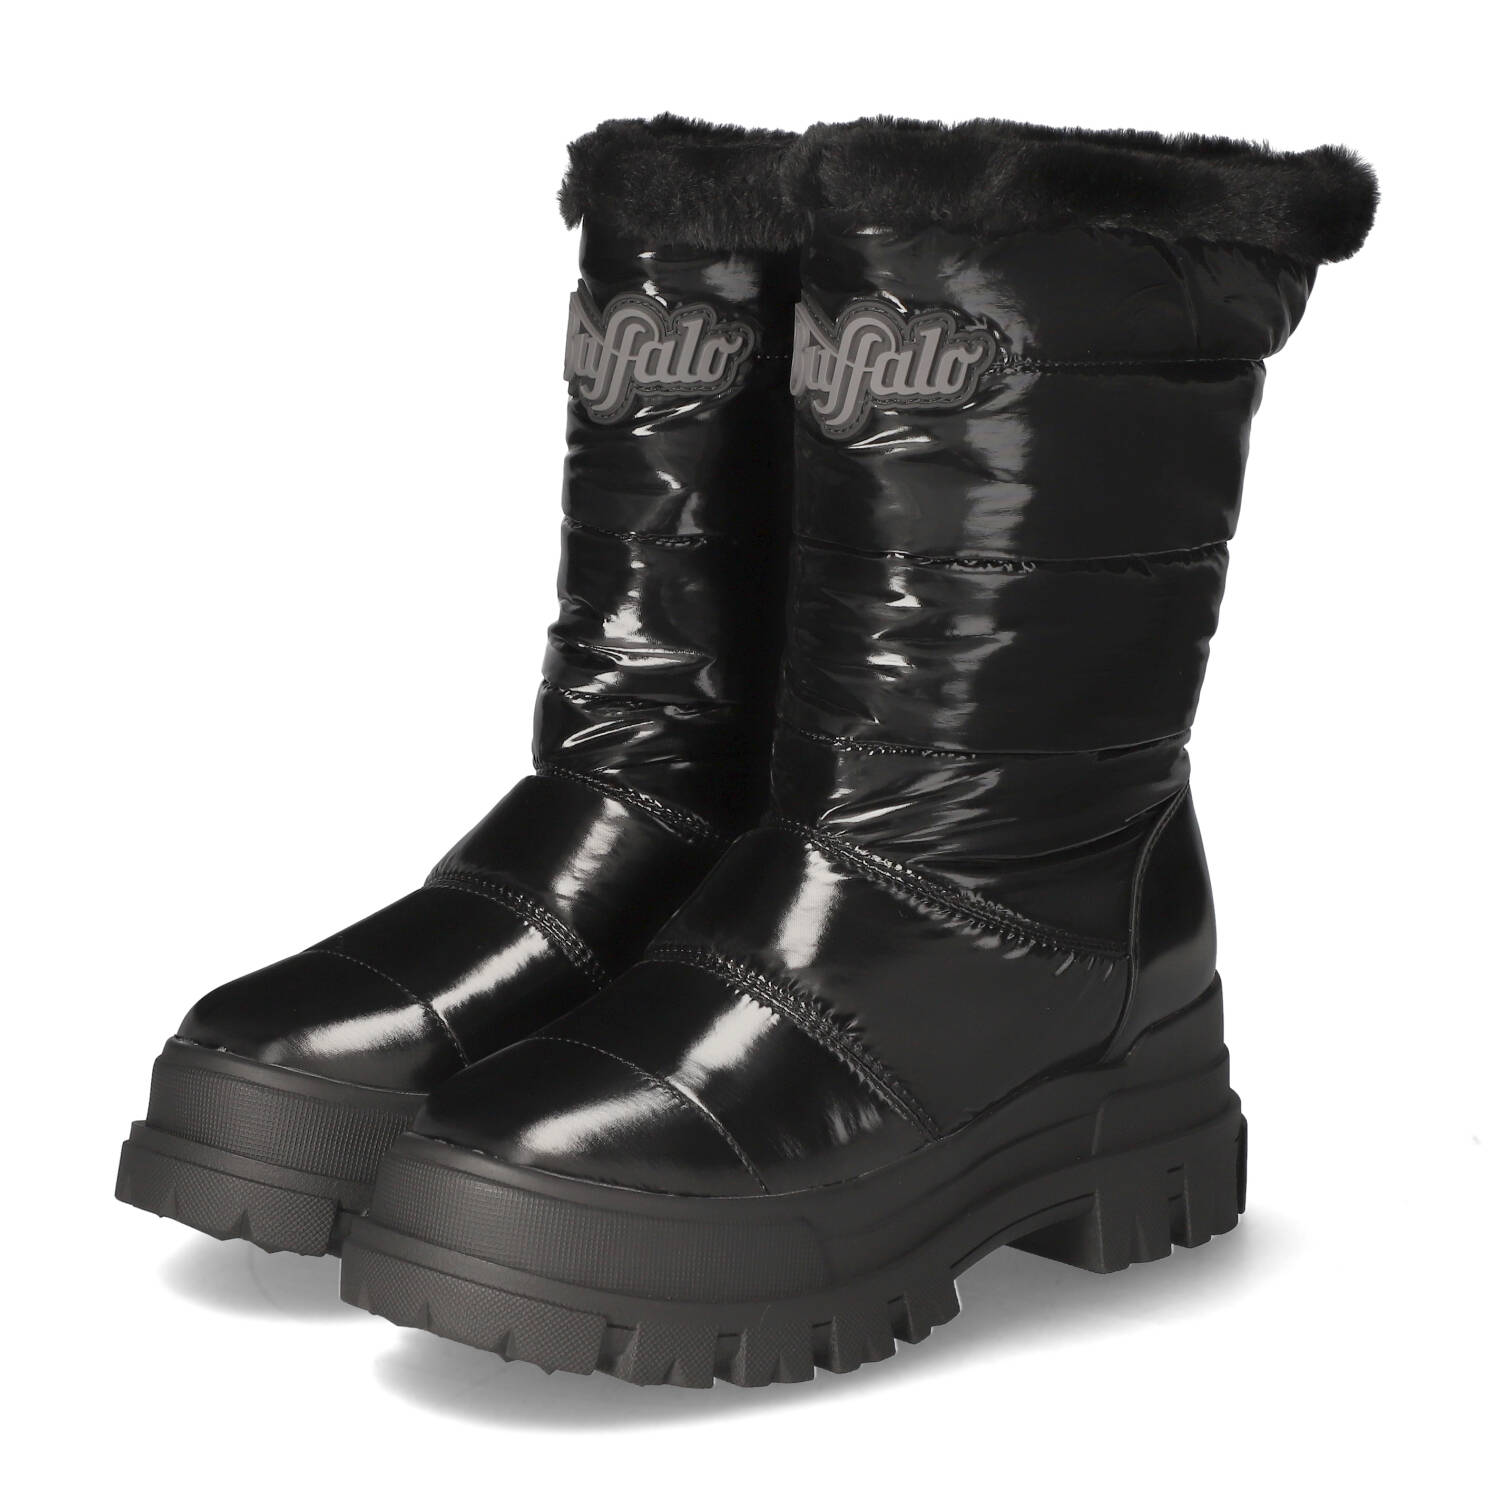 Ботинки Buffalo Winterstiefel ASPHA SNOW, черный ботинки aspha rain hi buffalo черный